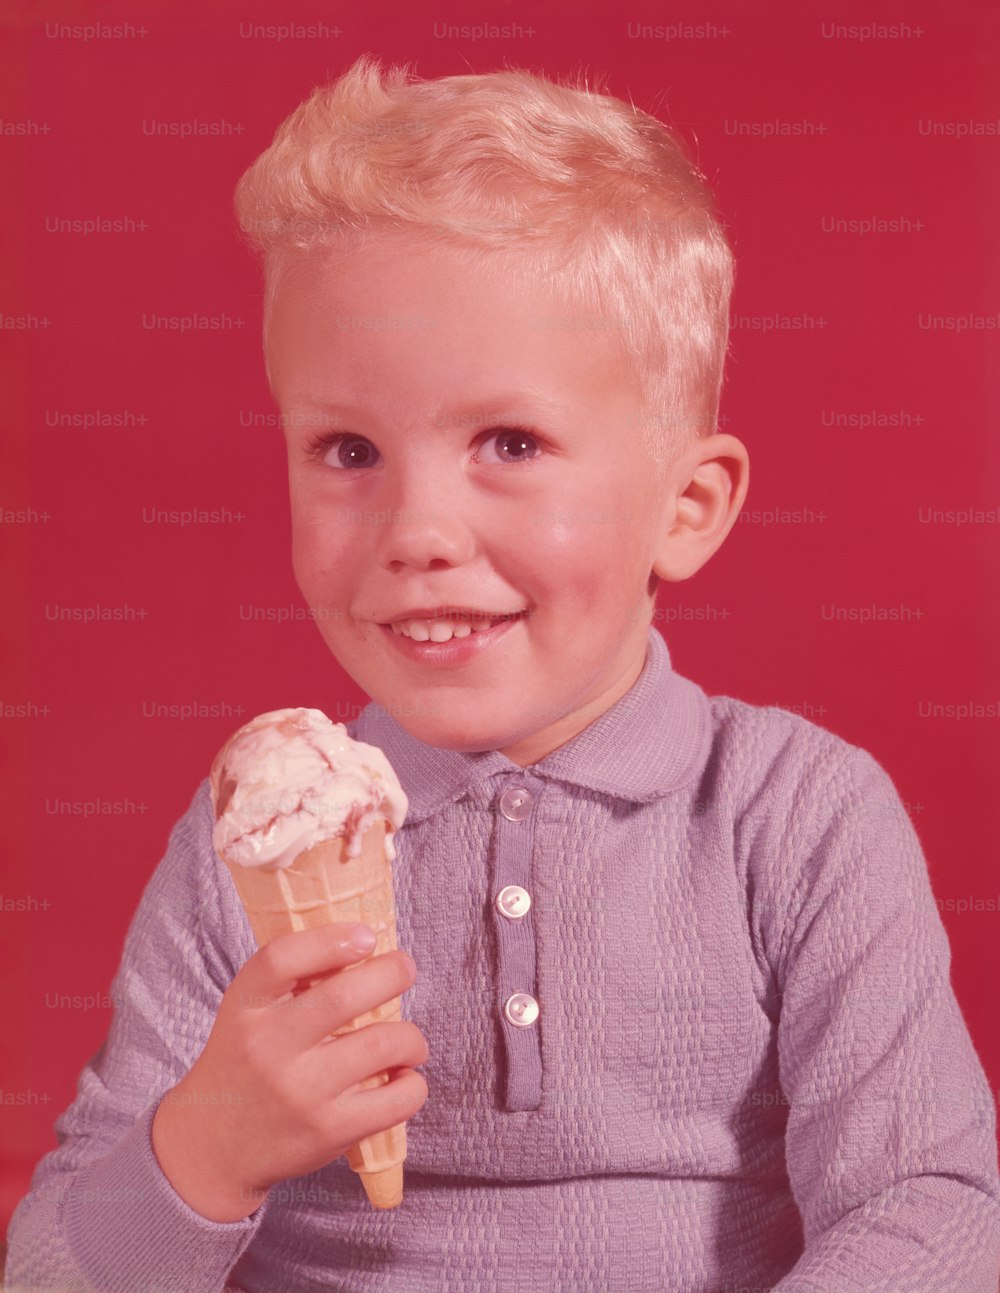 ÉTATS-UNIS - Circa 1950s : Garçon avec cornet de crème glacée.